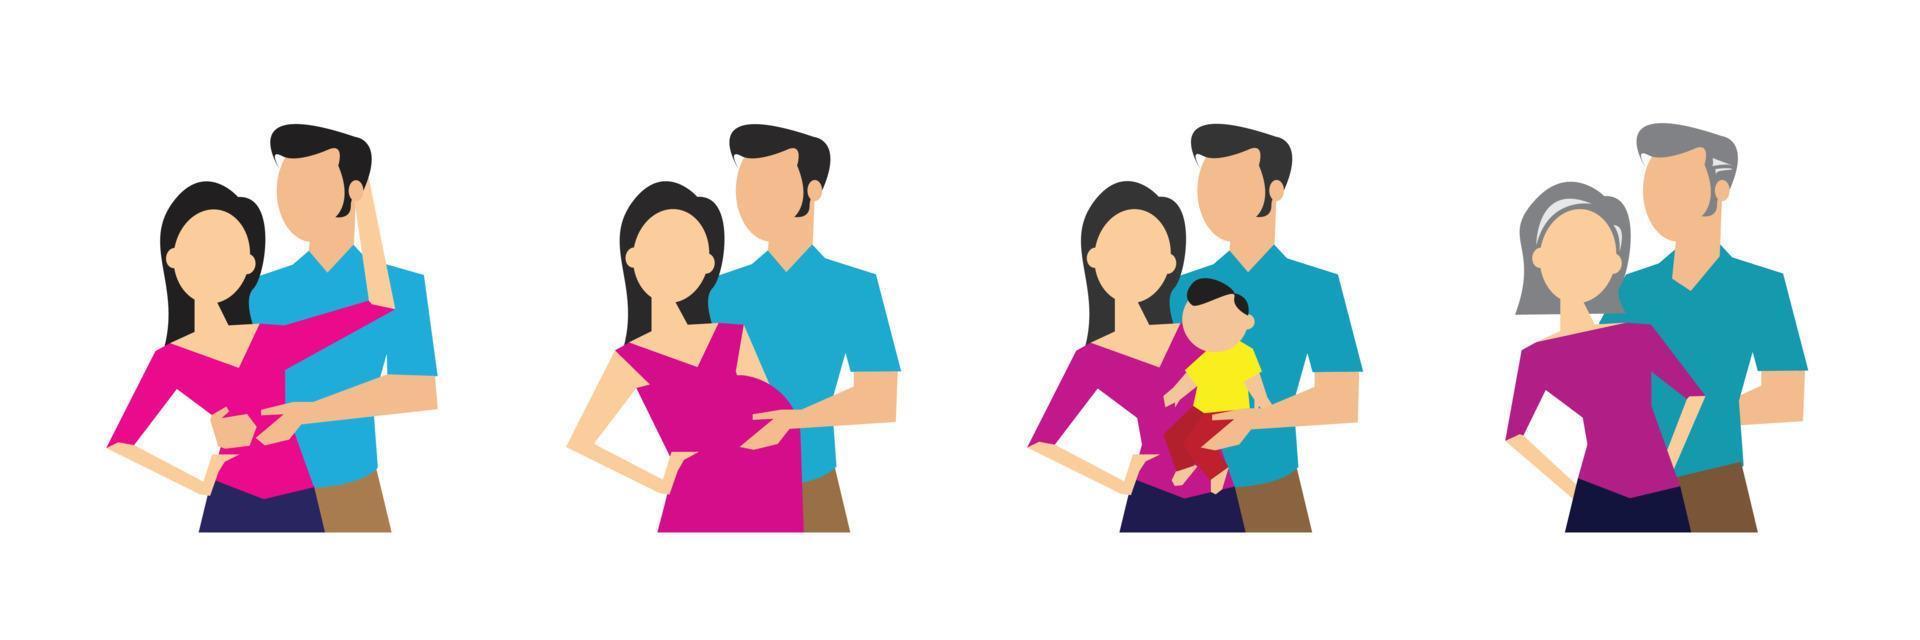 etapas de desarrollo de la generación familiar. ilustración vectorial vector